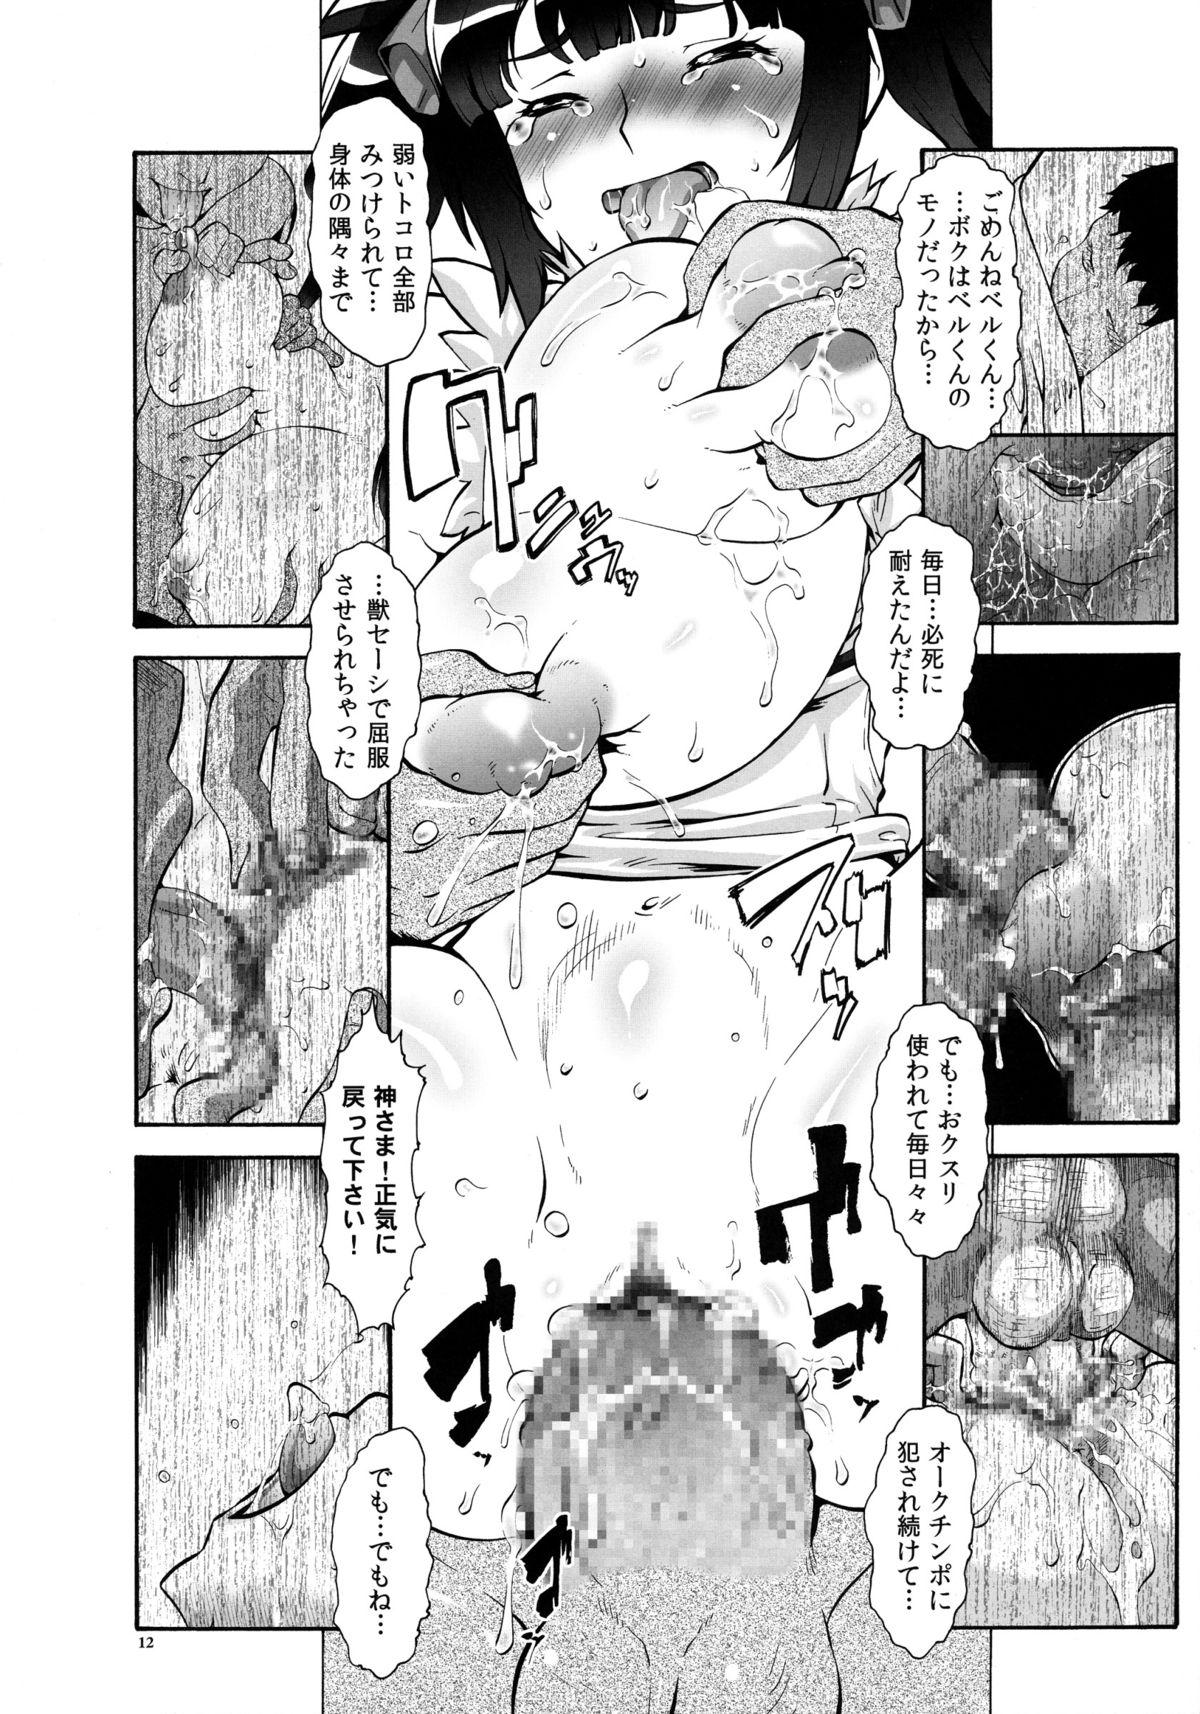 Punished Danmachi - Dungeon ni deai o motomeru no wa machigatteiru darou ka Gay Outinpublic - Page 12